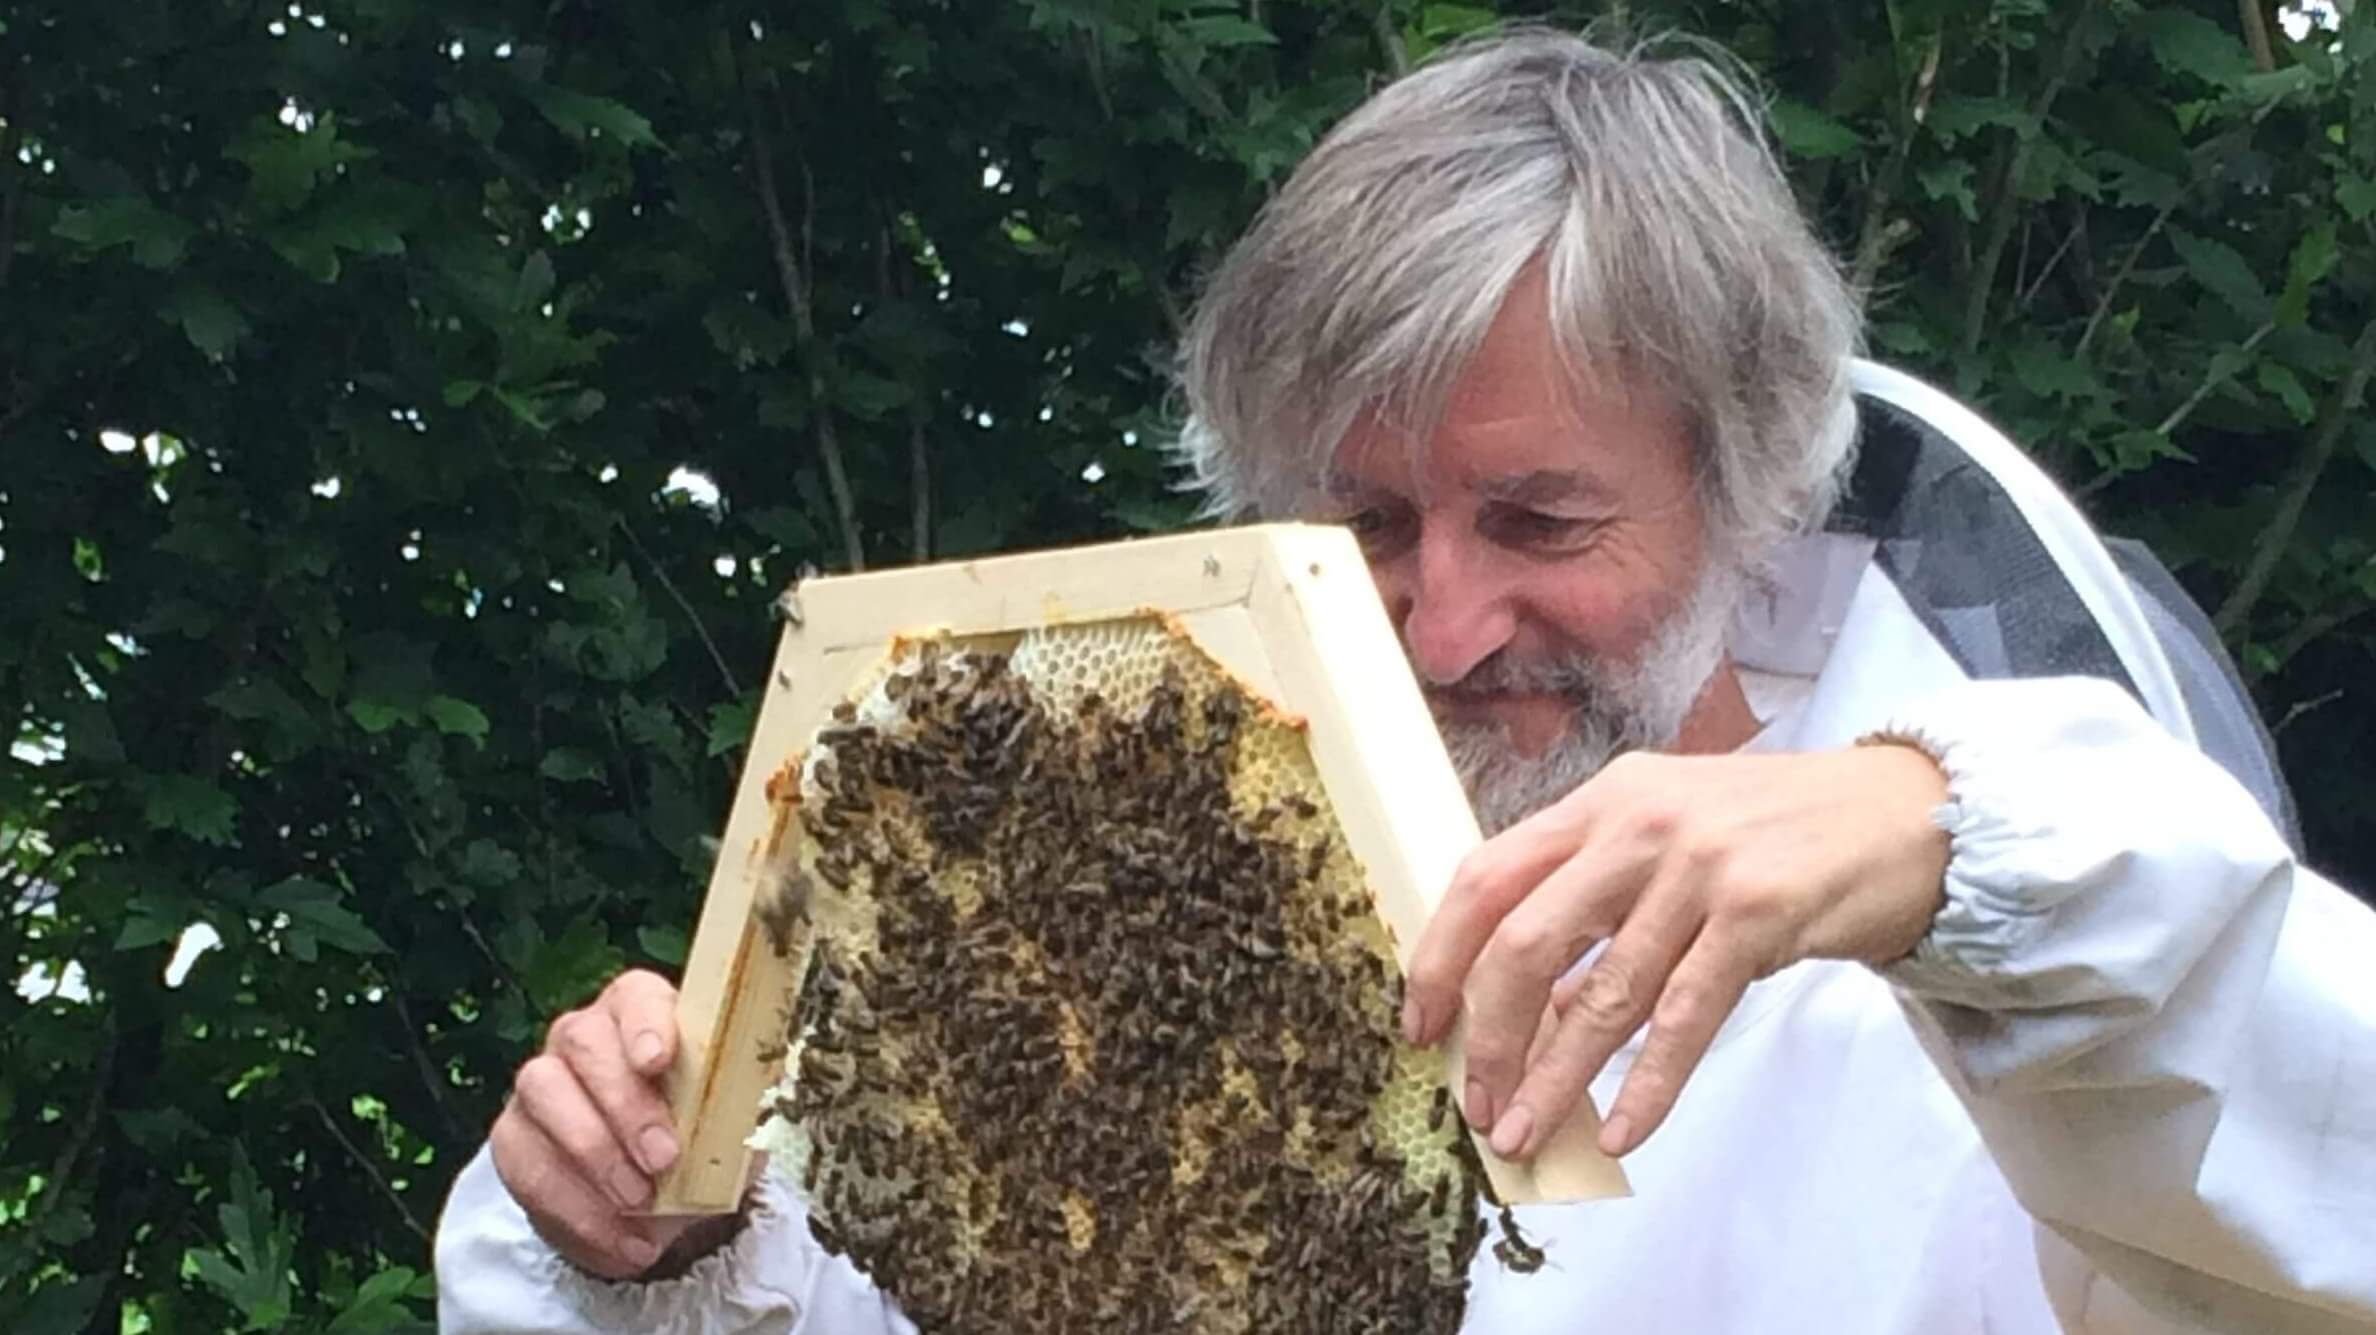 ANNULATIE: Jef nodigt uit: "Kom af en laat ons ervaringen uitwisselen over respectvol bijen hoeden!"